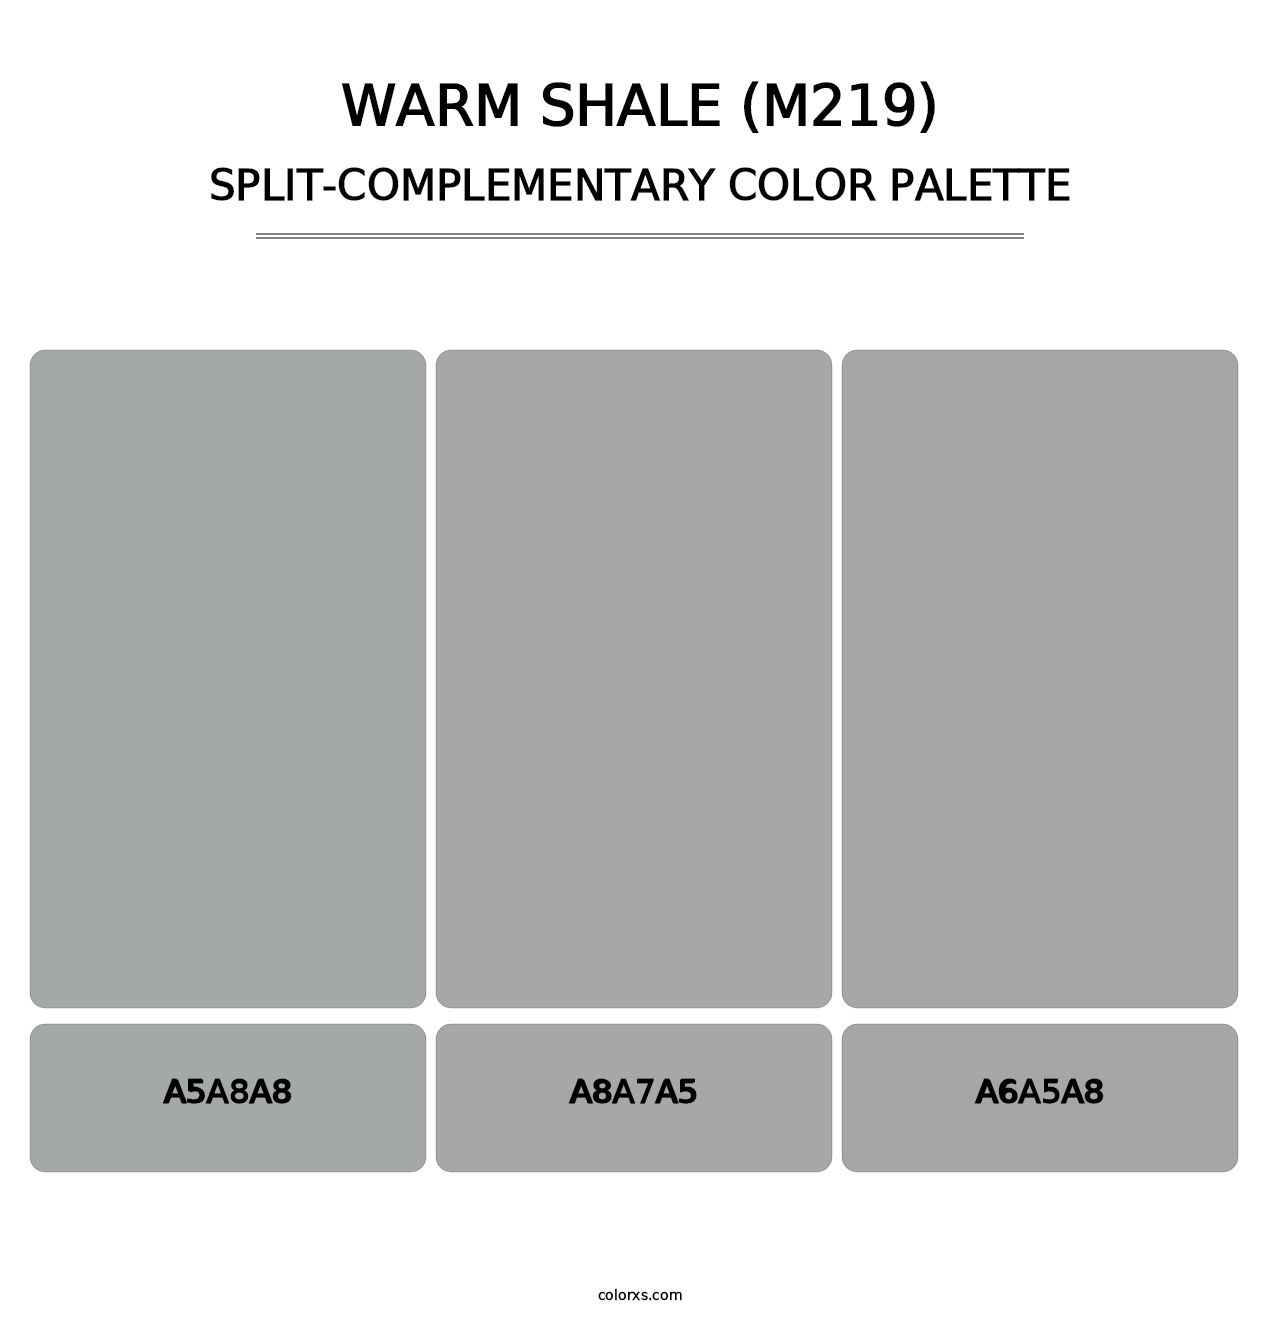 Warm Shale (M219) - Split-Complementary Color Palette